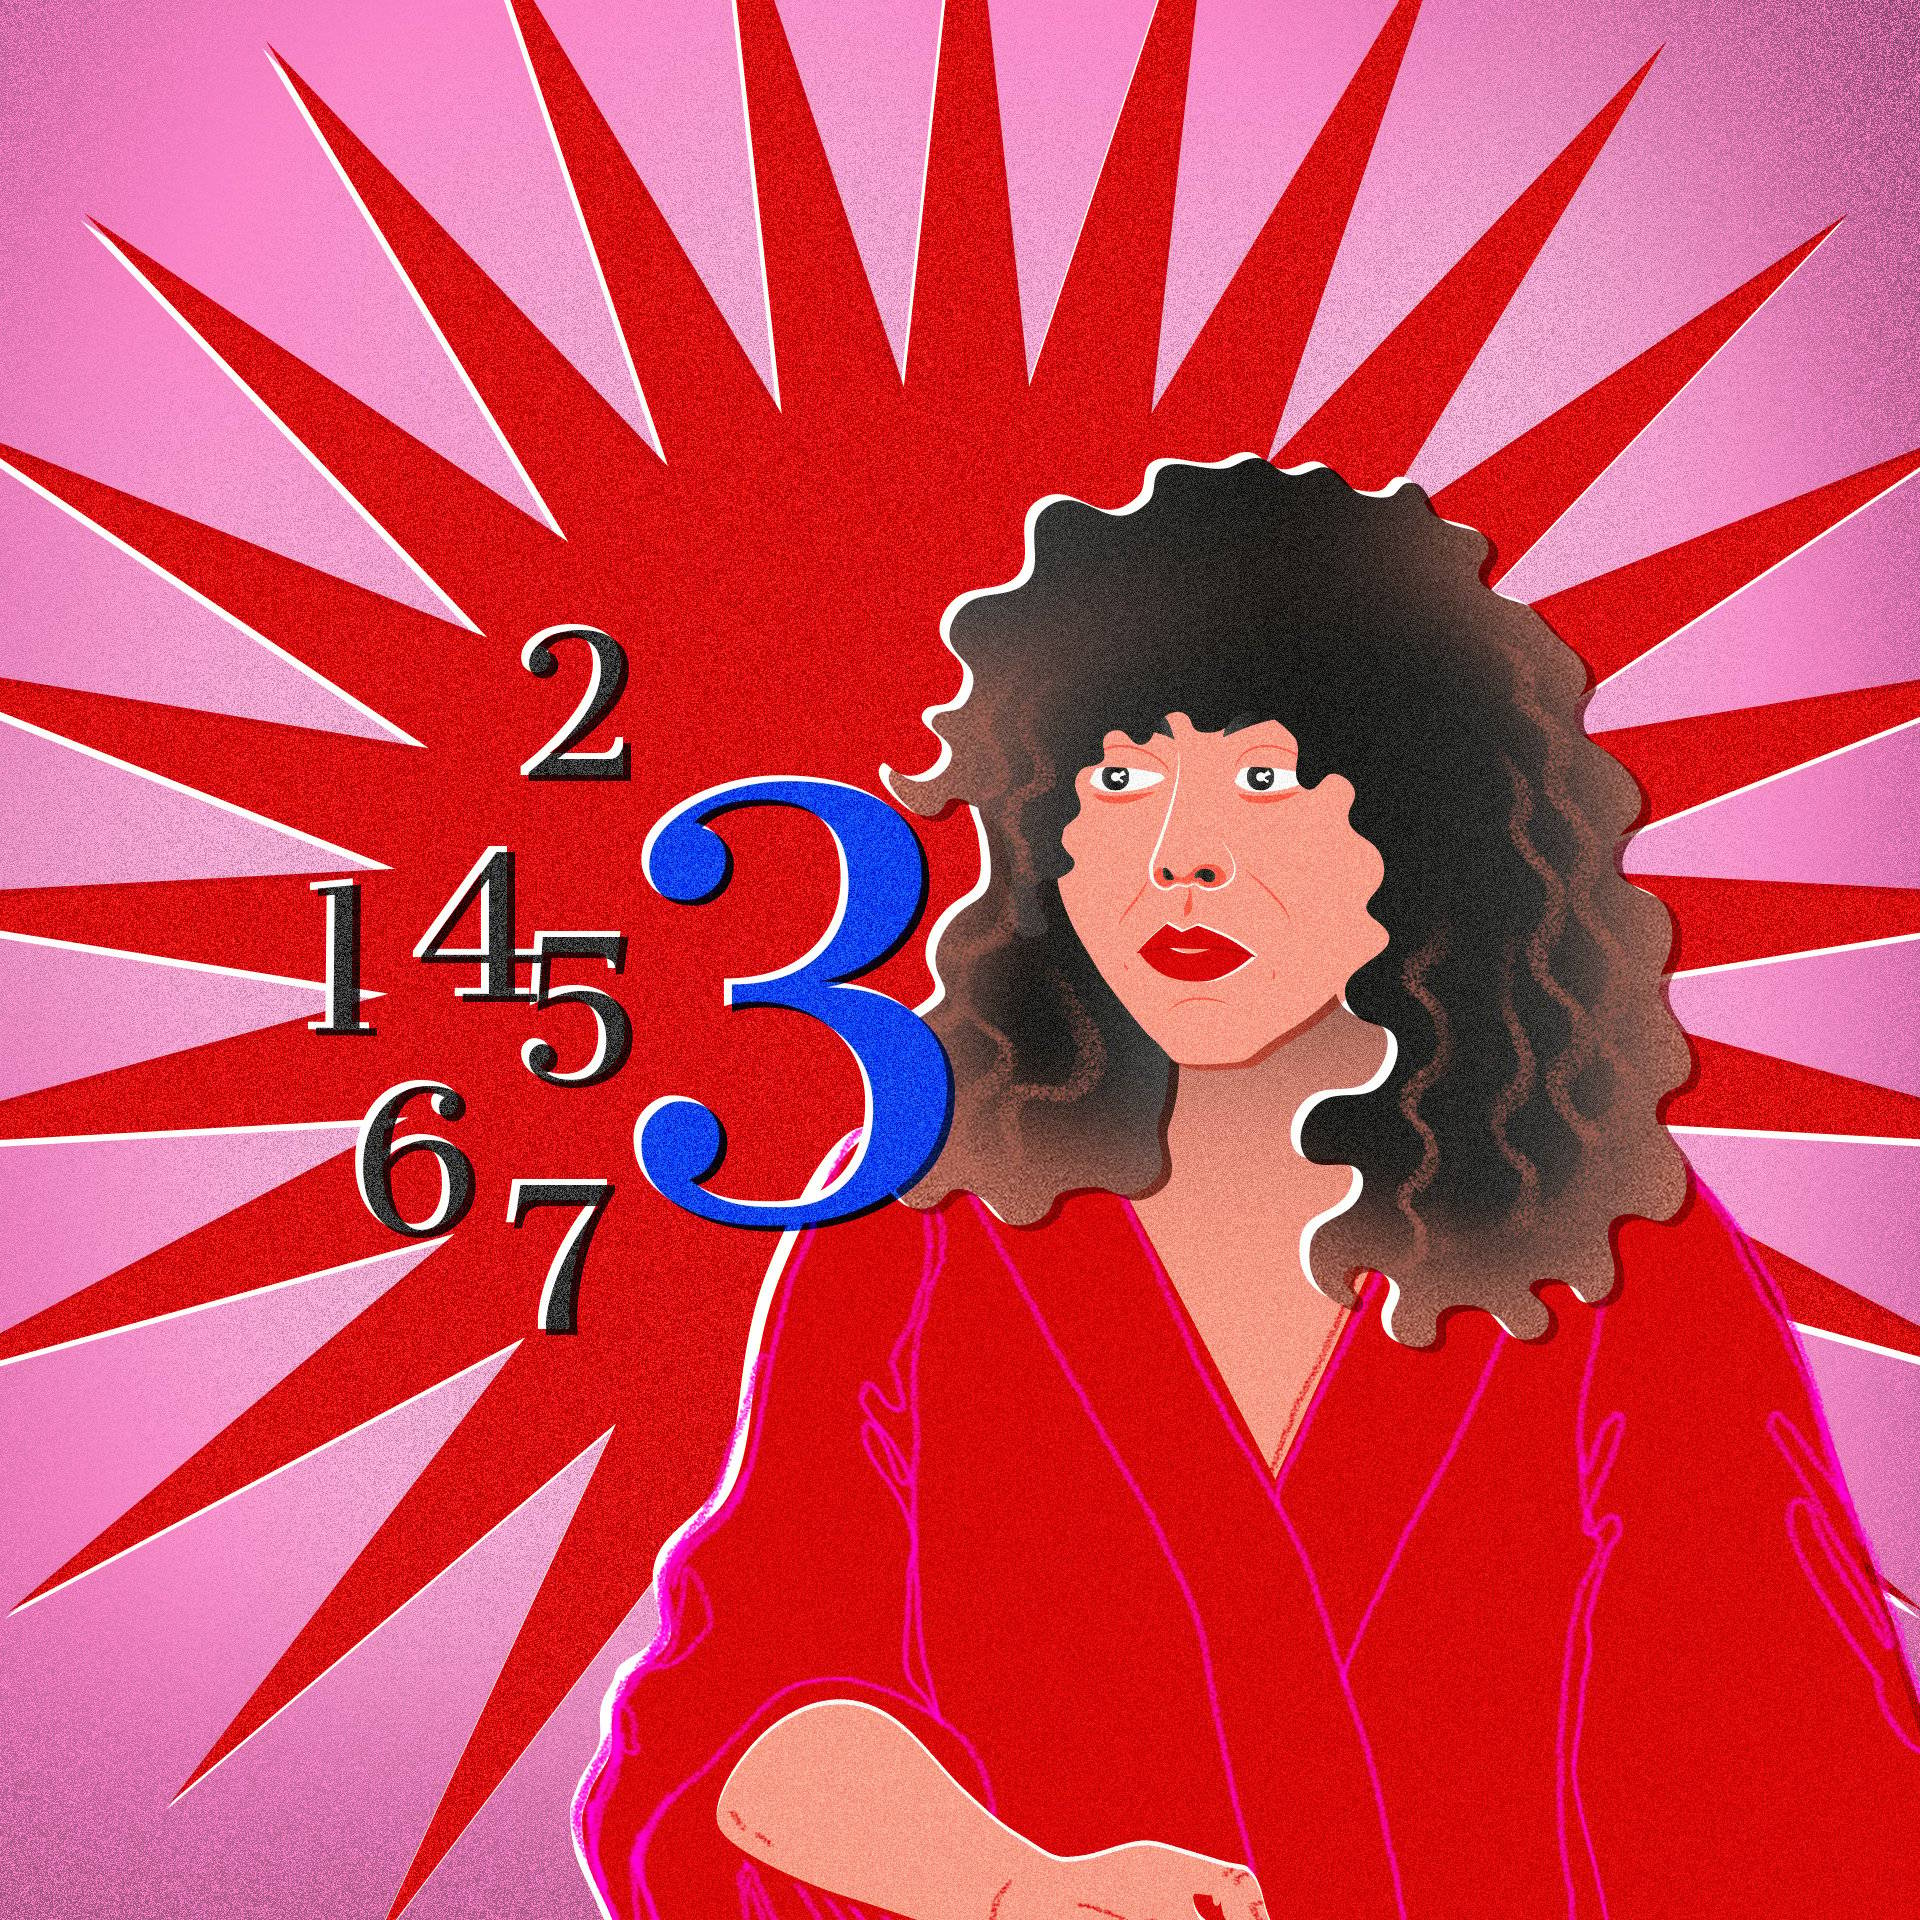 Różowo-czerwona grafika z wizerunkiem kobiety o kręconych włosach (Agnieszki Szpili) i cyframi od 1 do 7, gdzie wyróżniona jest cyfra 3